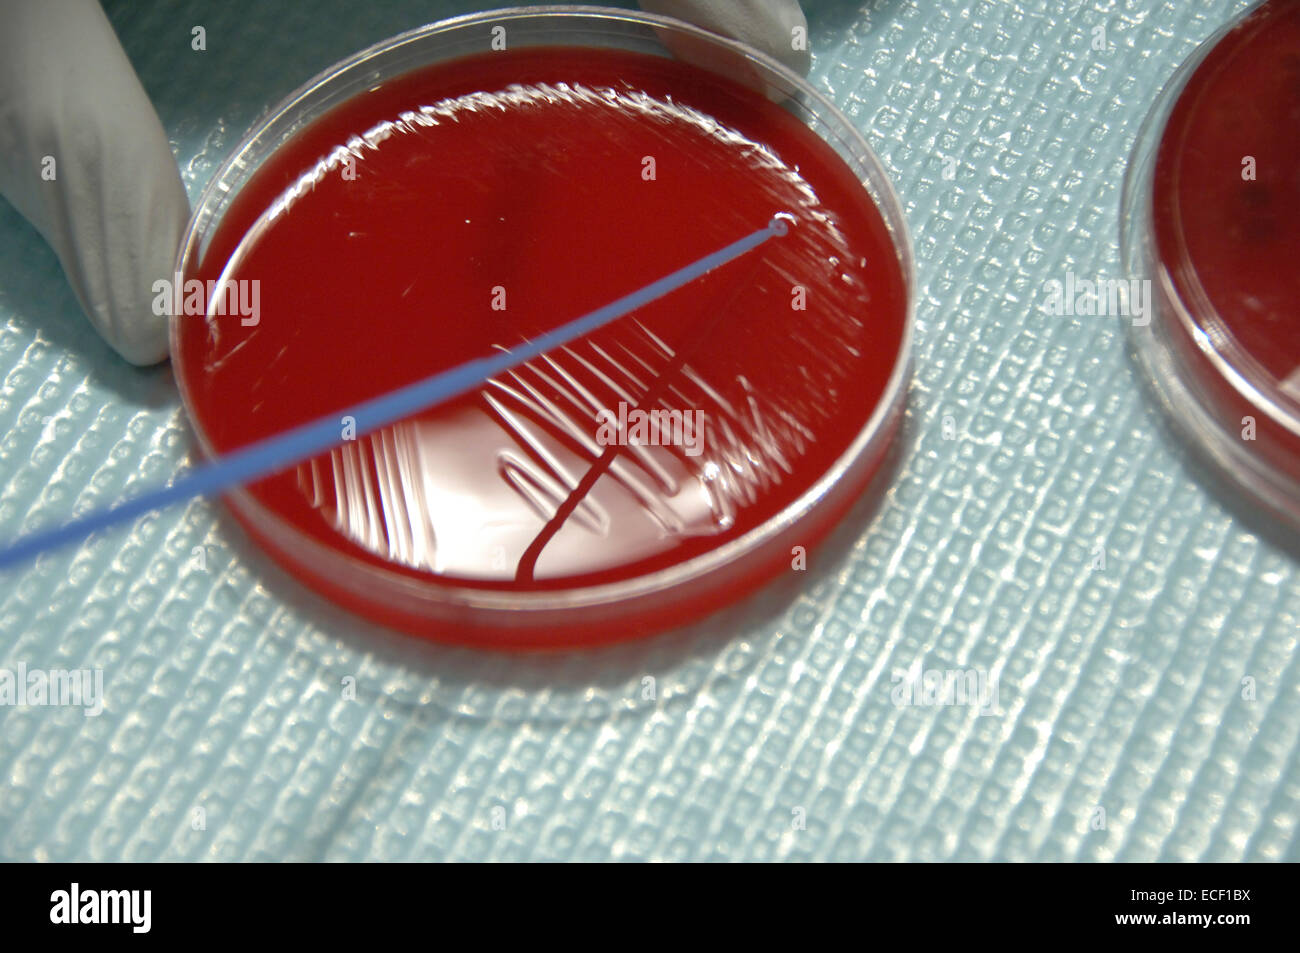 La bacteria estafilococo de la piel humana, cultivadas en agar en el laboratorio. Foto de stock